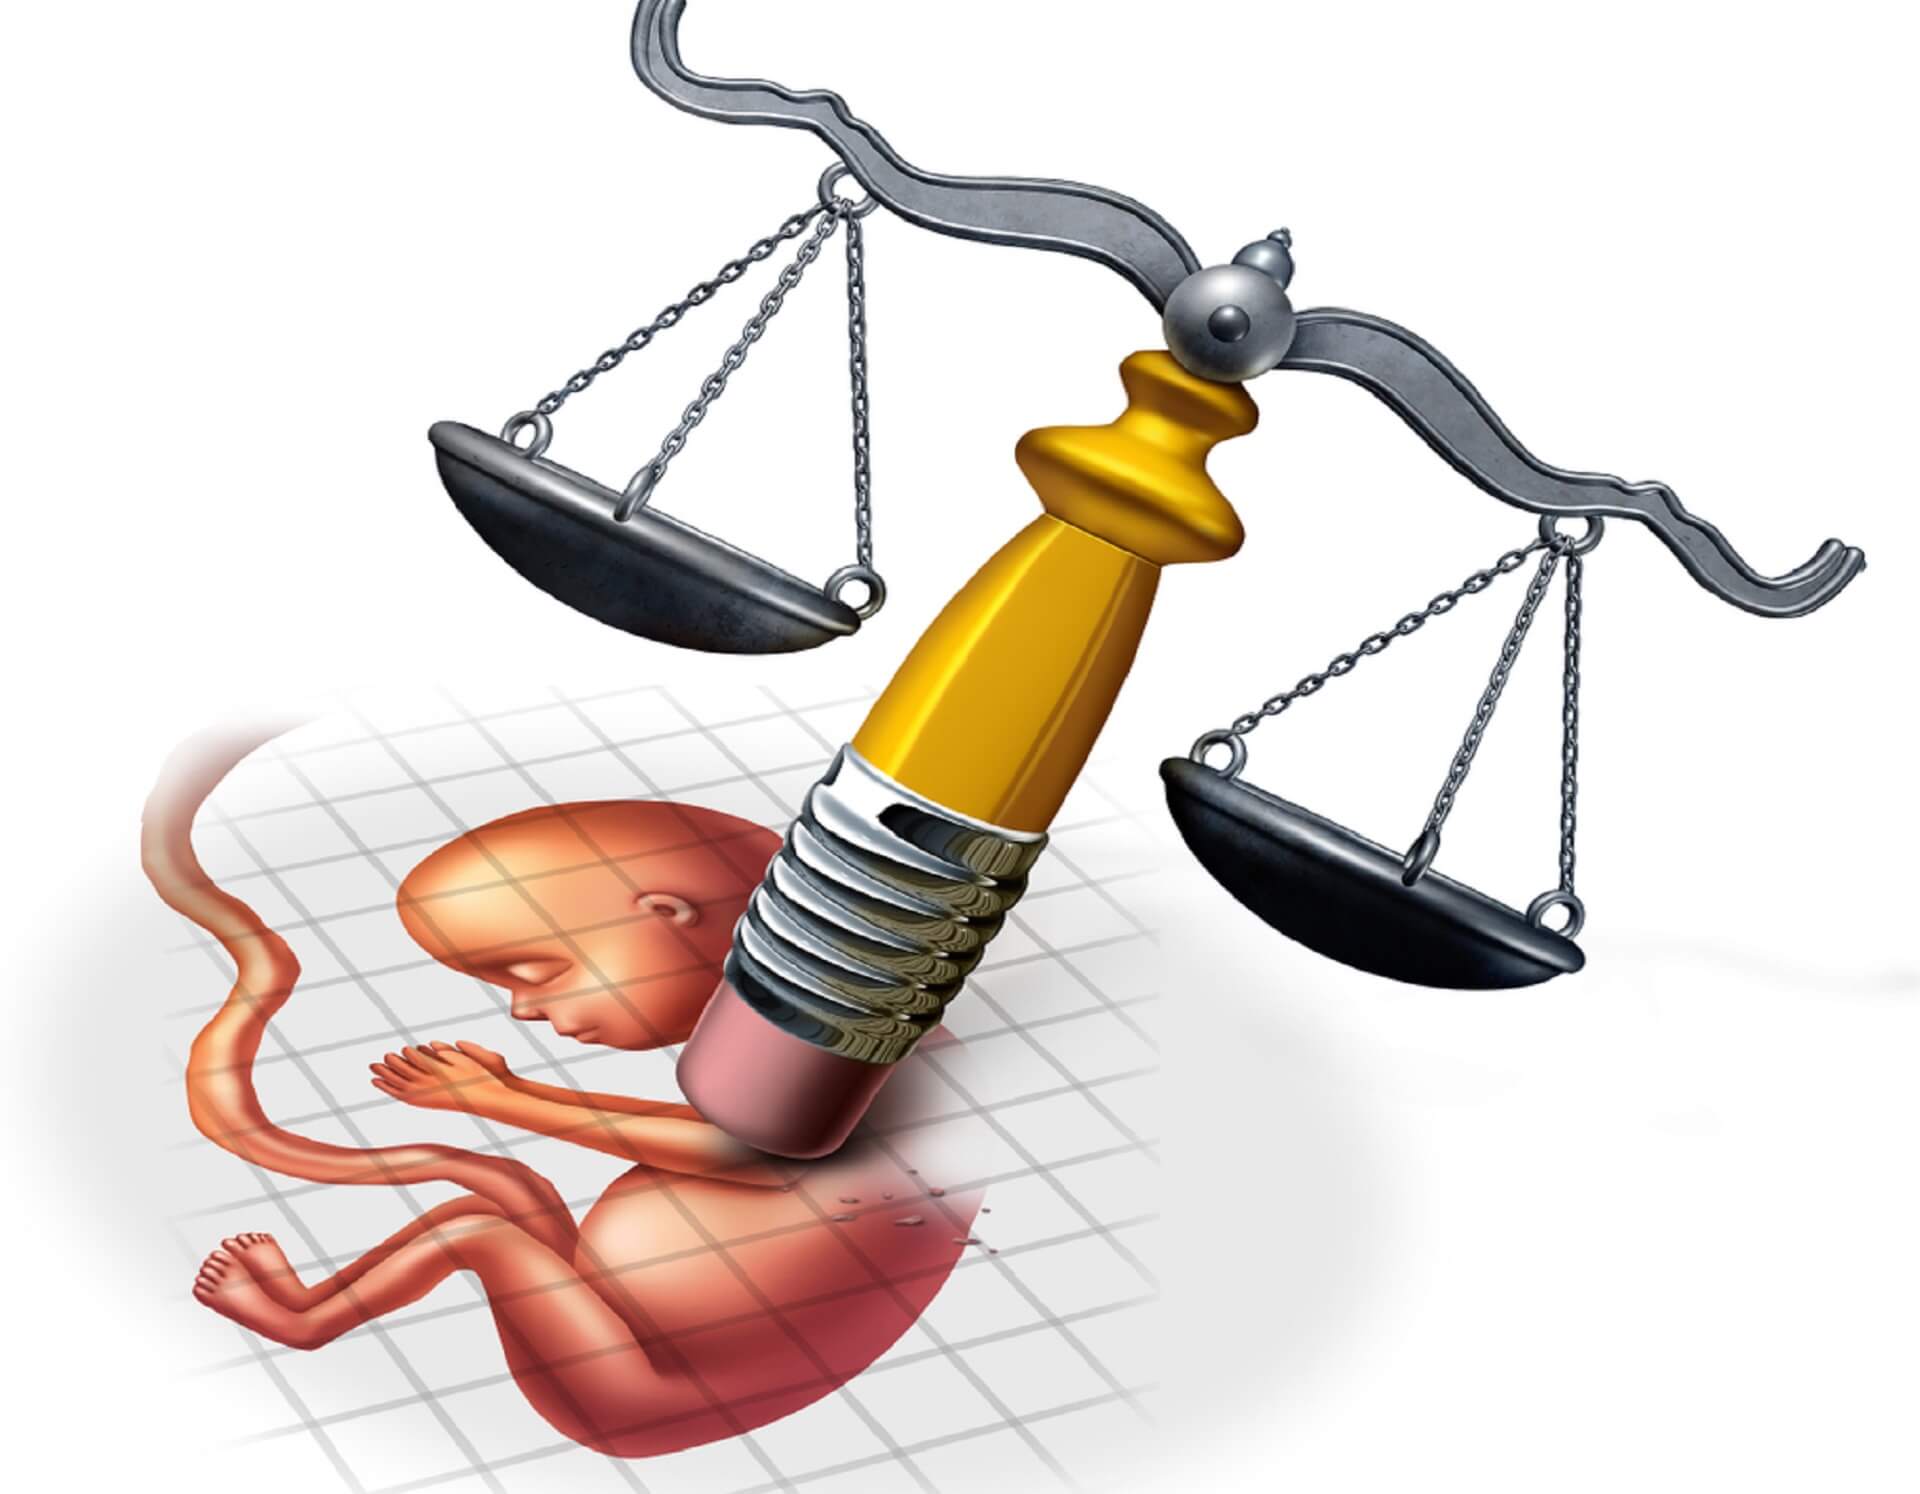 „ABORCJA BEZ GRANIC” – POLKI NAMAWIAJĄ DO ABROCJI, TRAFIĄ POD OKO PROKURATURY